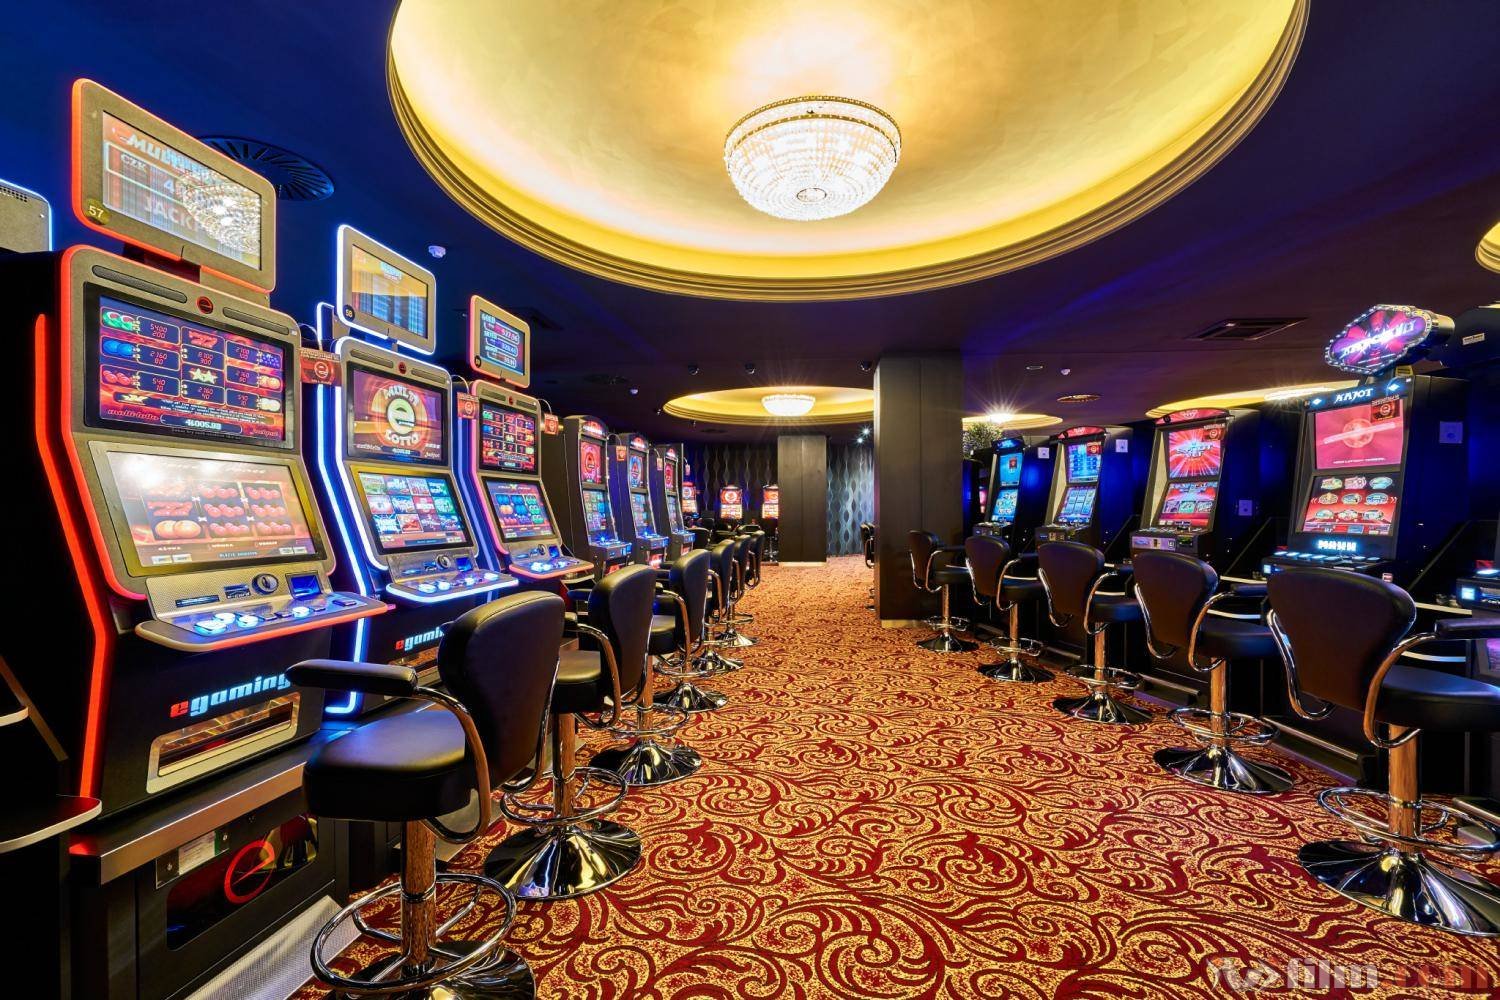 T casino рабочий сайт. Игровые автоматы казино еврогранд. Казино Икс. Сказочное казино. Казино Гранд Холл.